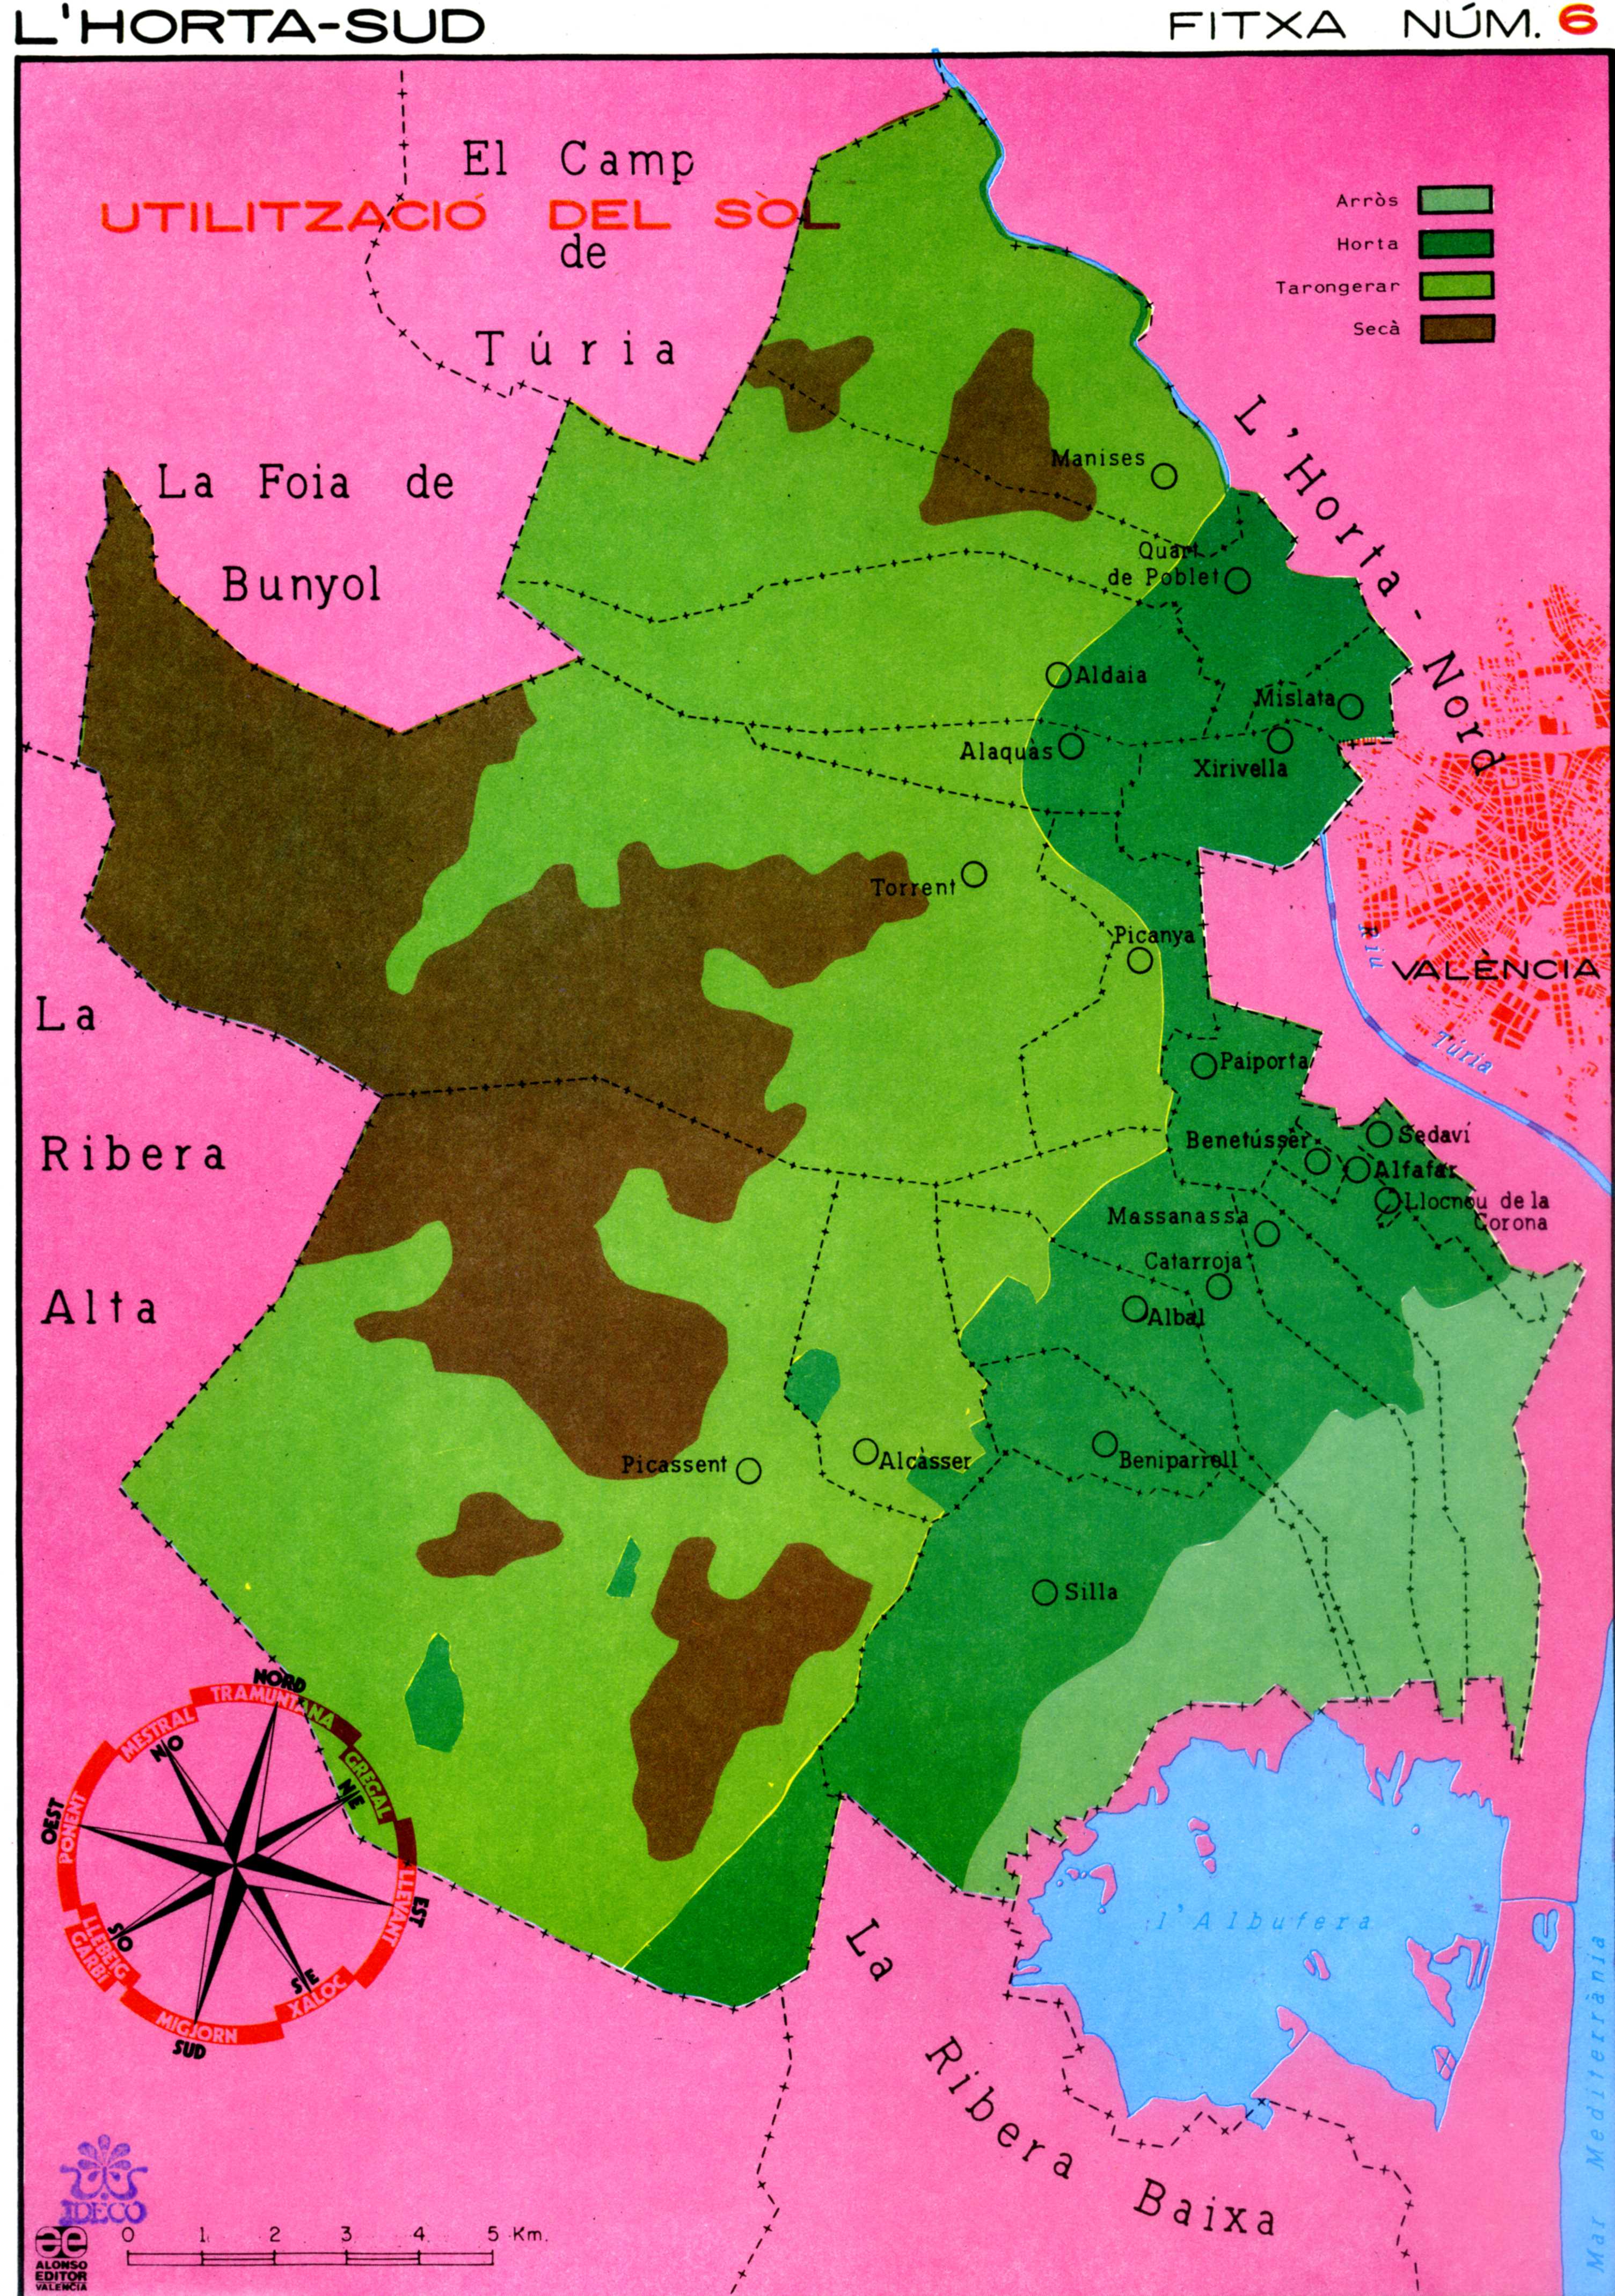 CEL-DO-A0122 - Mapes escolars de L'Horta Sud (6)